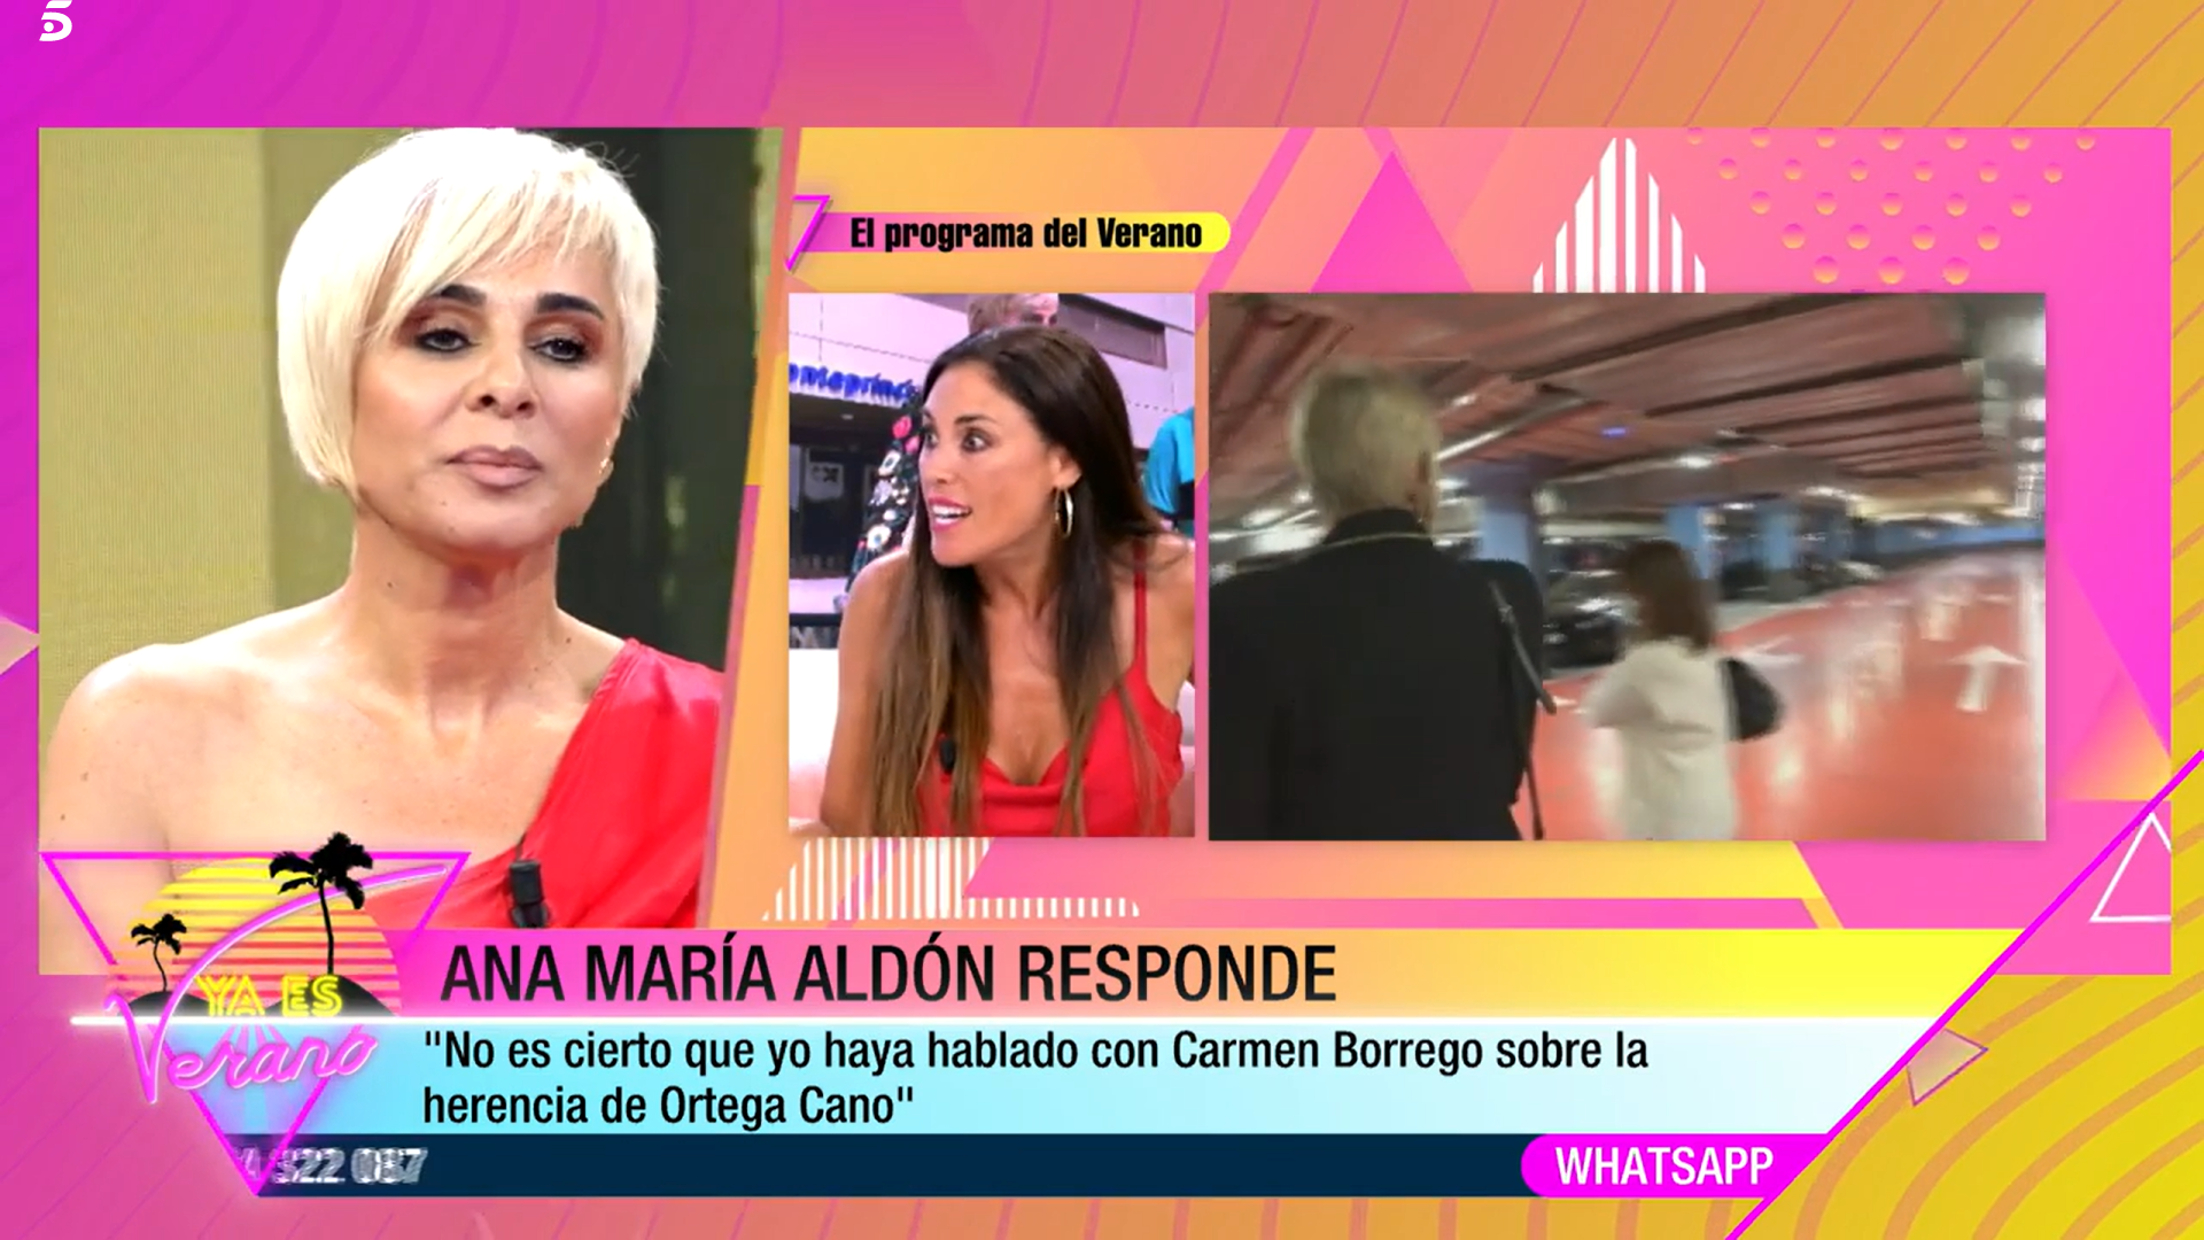 Ana María Aldón ha reaccionado a los rumores de separación por parte de otras personas.